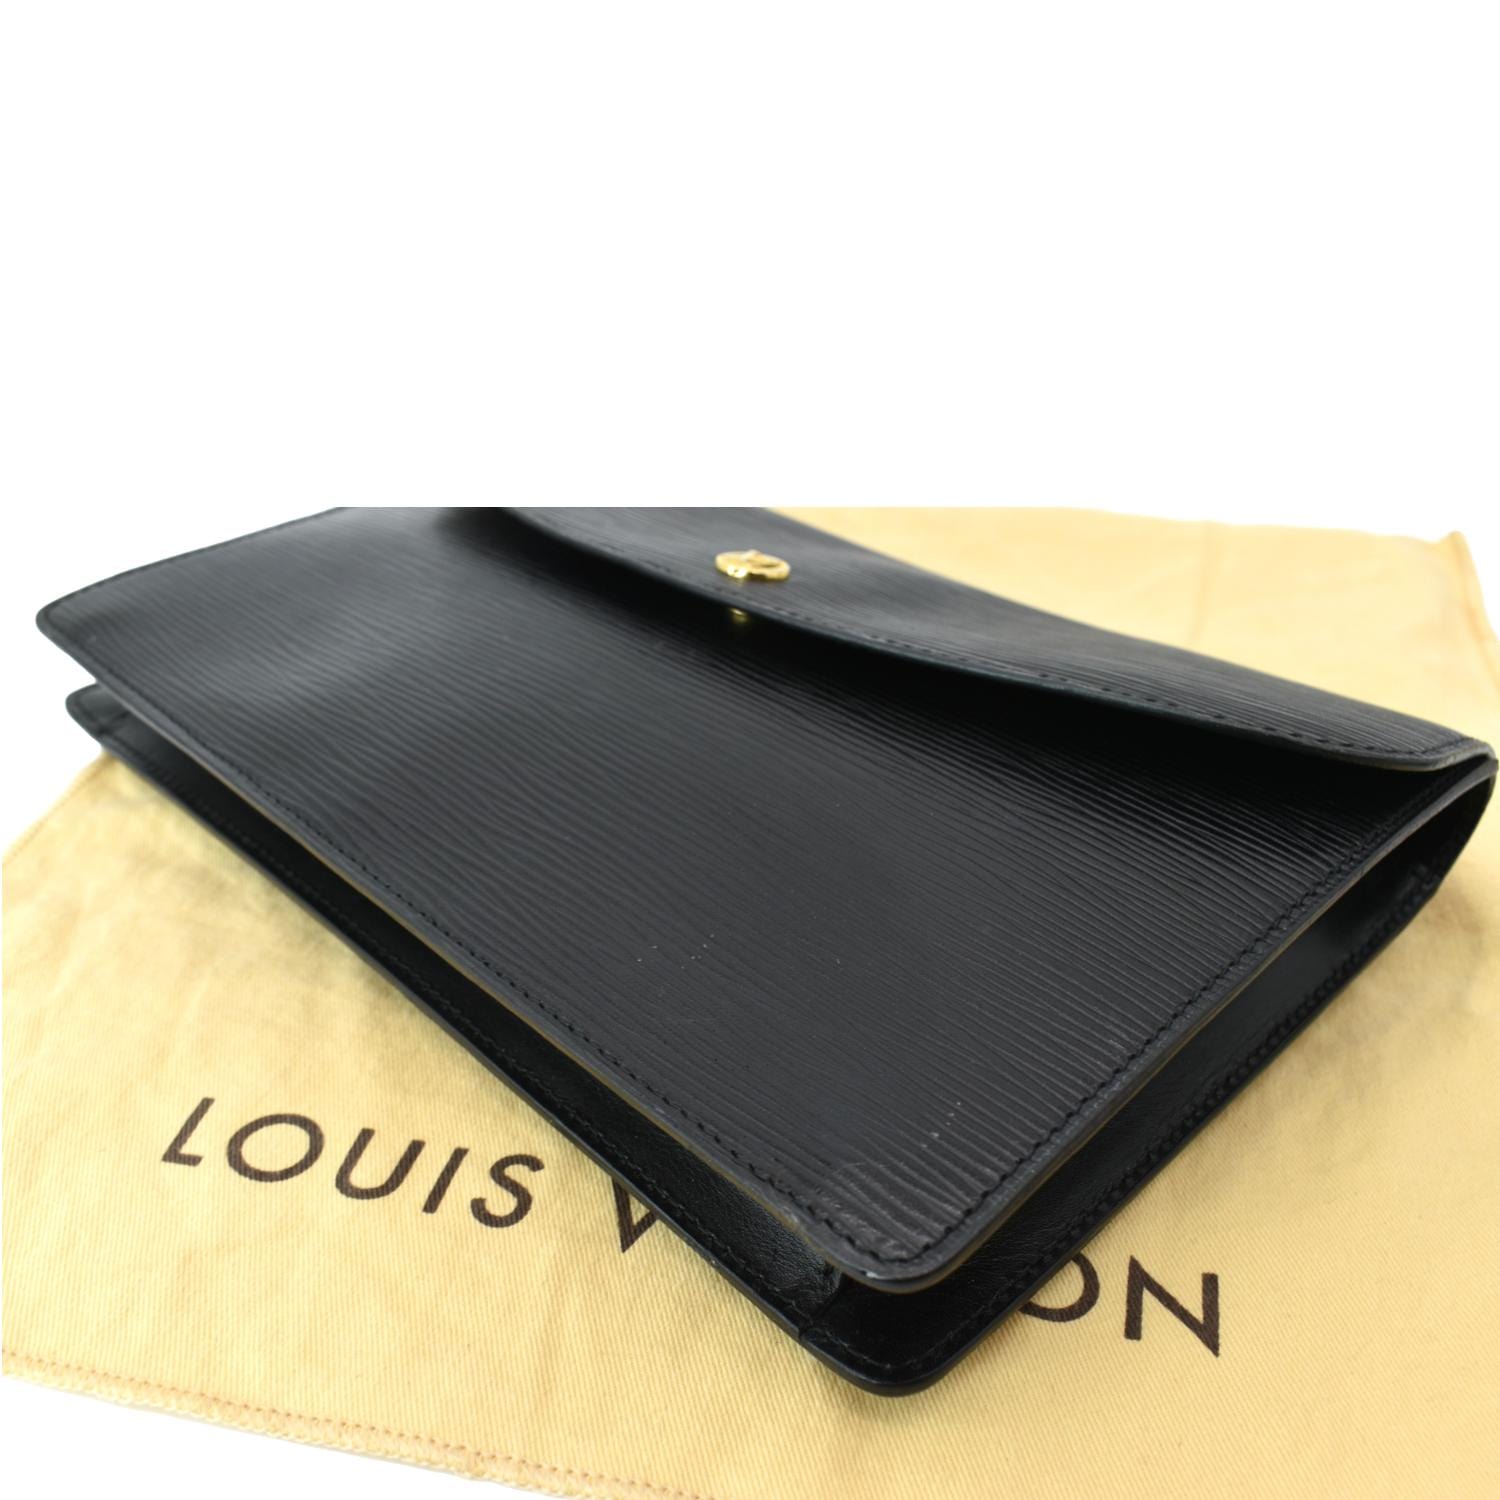 Authentic Vtg. LOUIS VUITTON EPI Leather Clutch Bag, Luxury, Bags